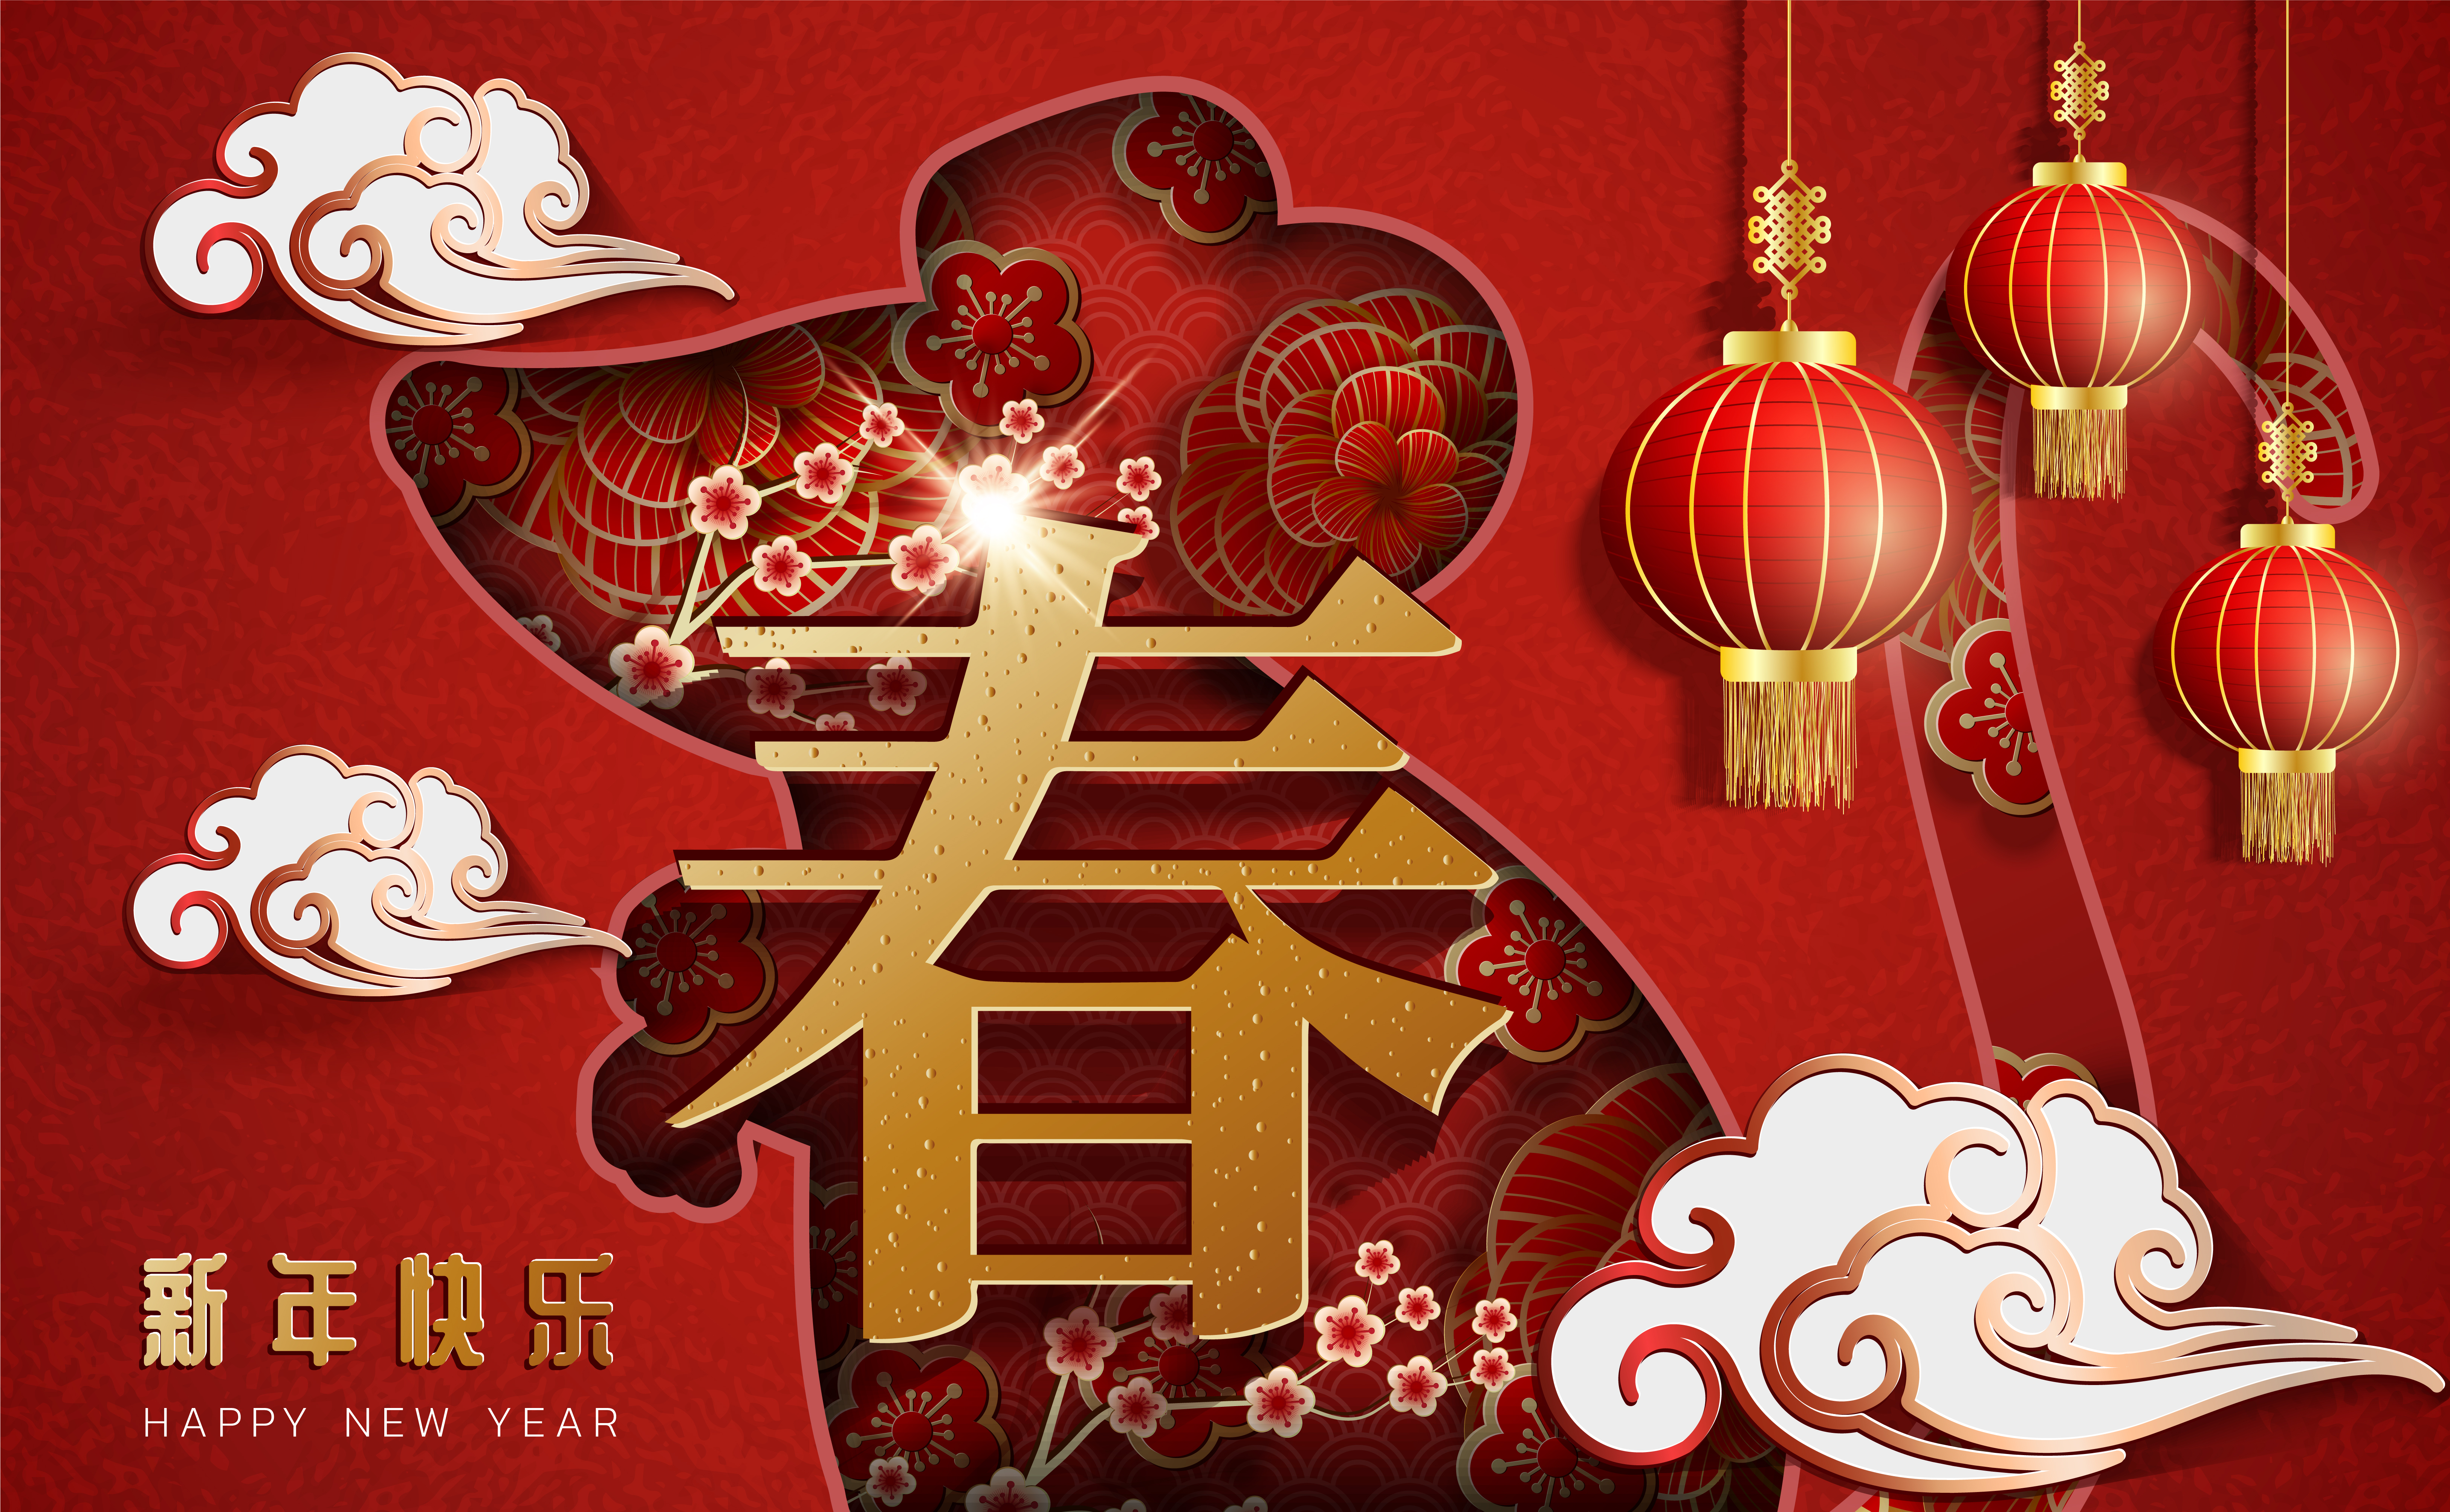 Chinese New Year 2022 Celebration